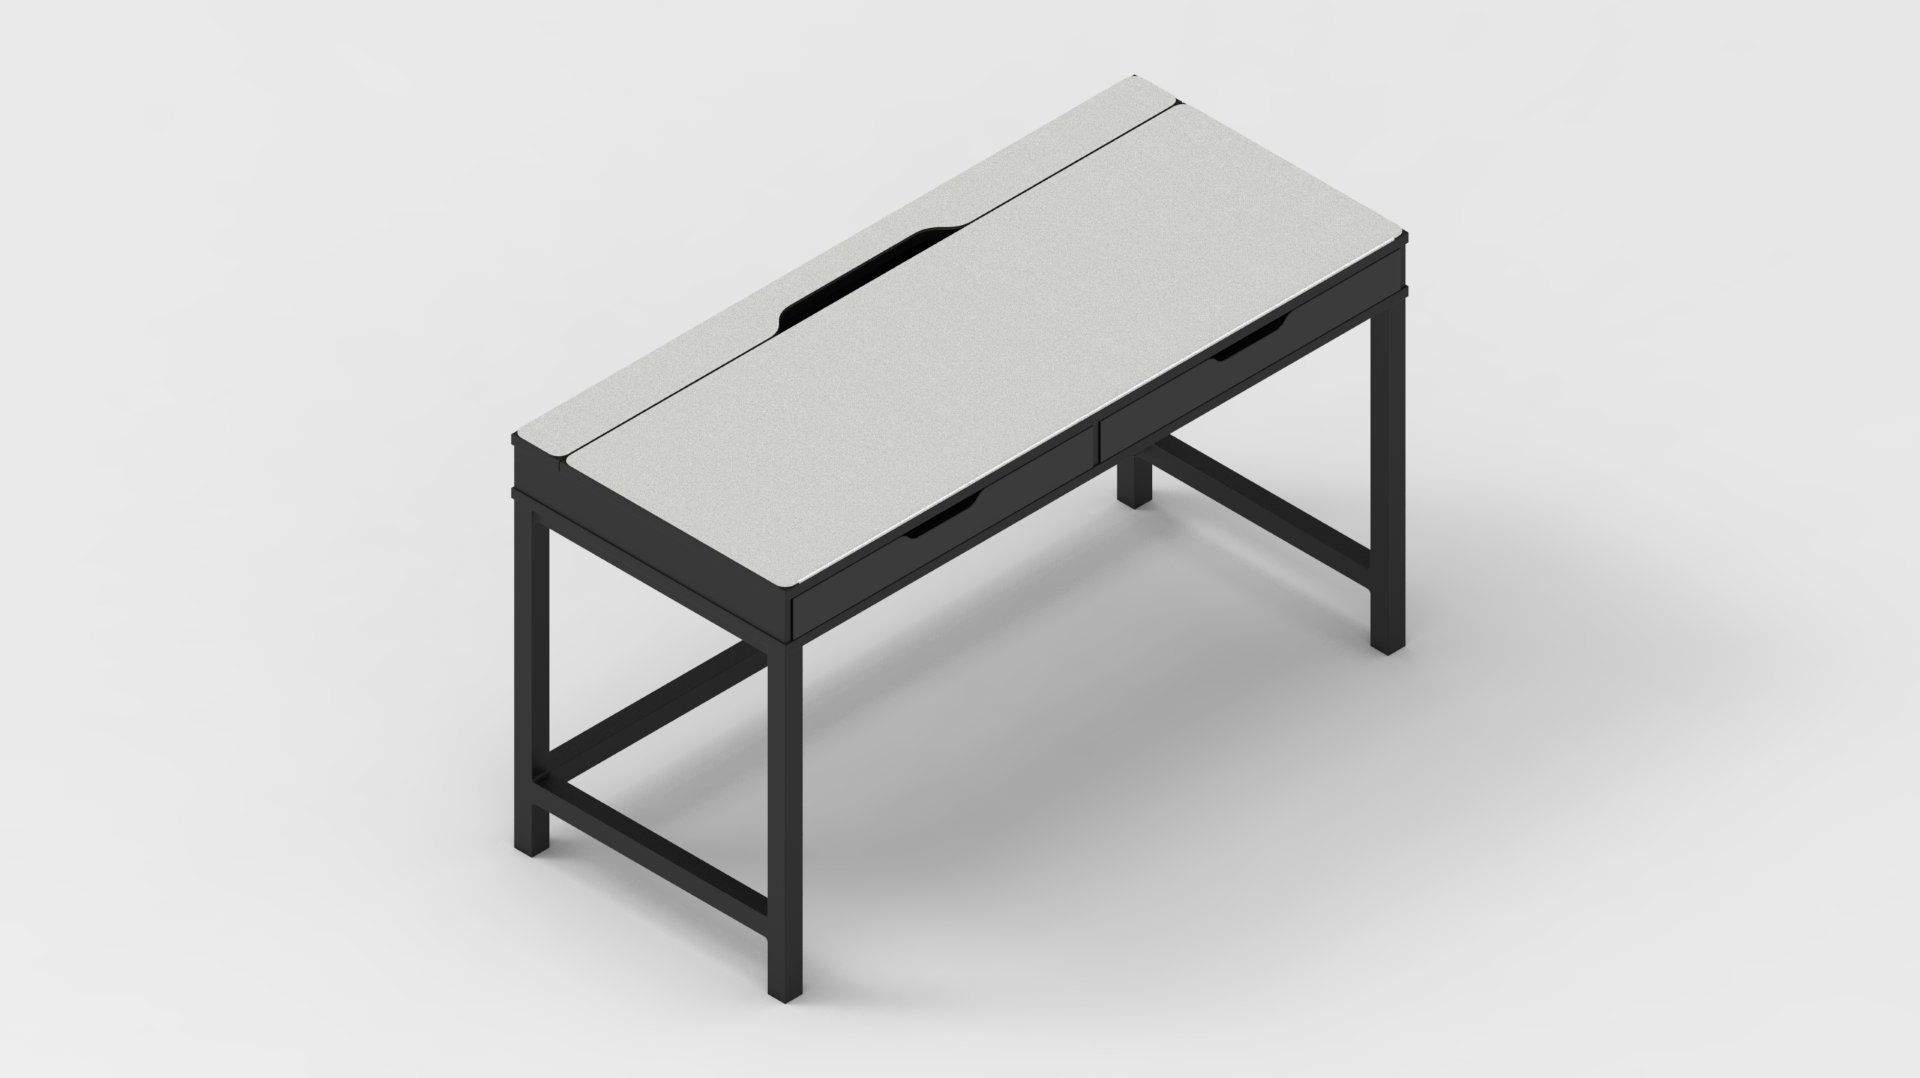 MK White IKEA ALEX Desk Mat (52" / 132 cm) Full-desk Mouse Pad MK9NGLRW91 |40169|